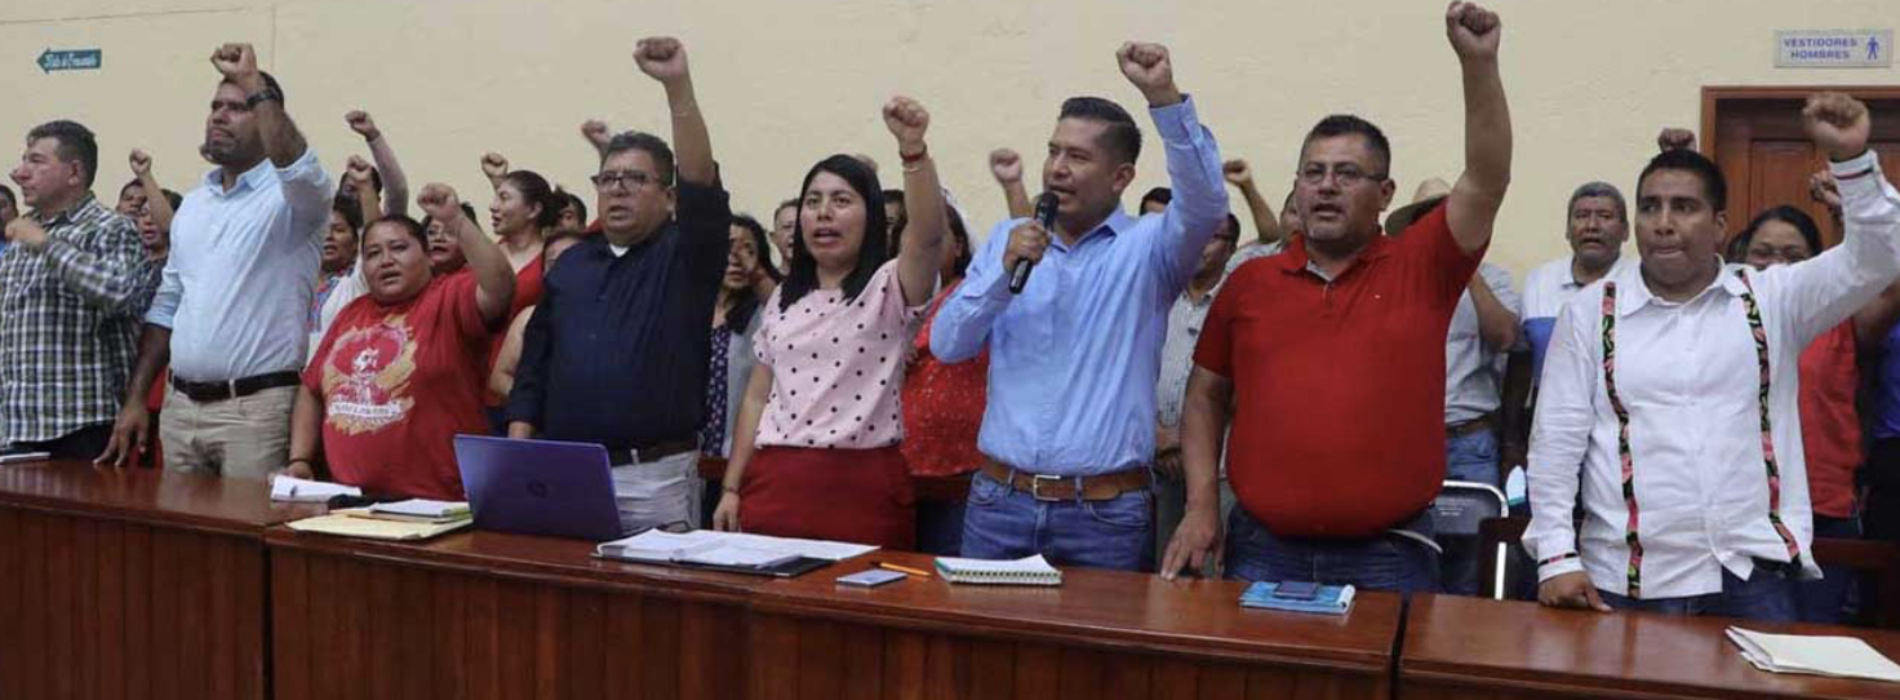 Sección 22 del SNTE acuerda paro de labores en todas las escuelas de Oaxaca